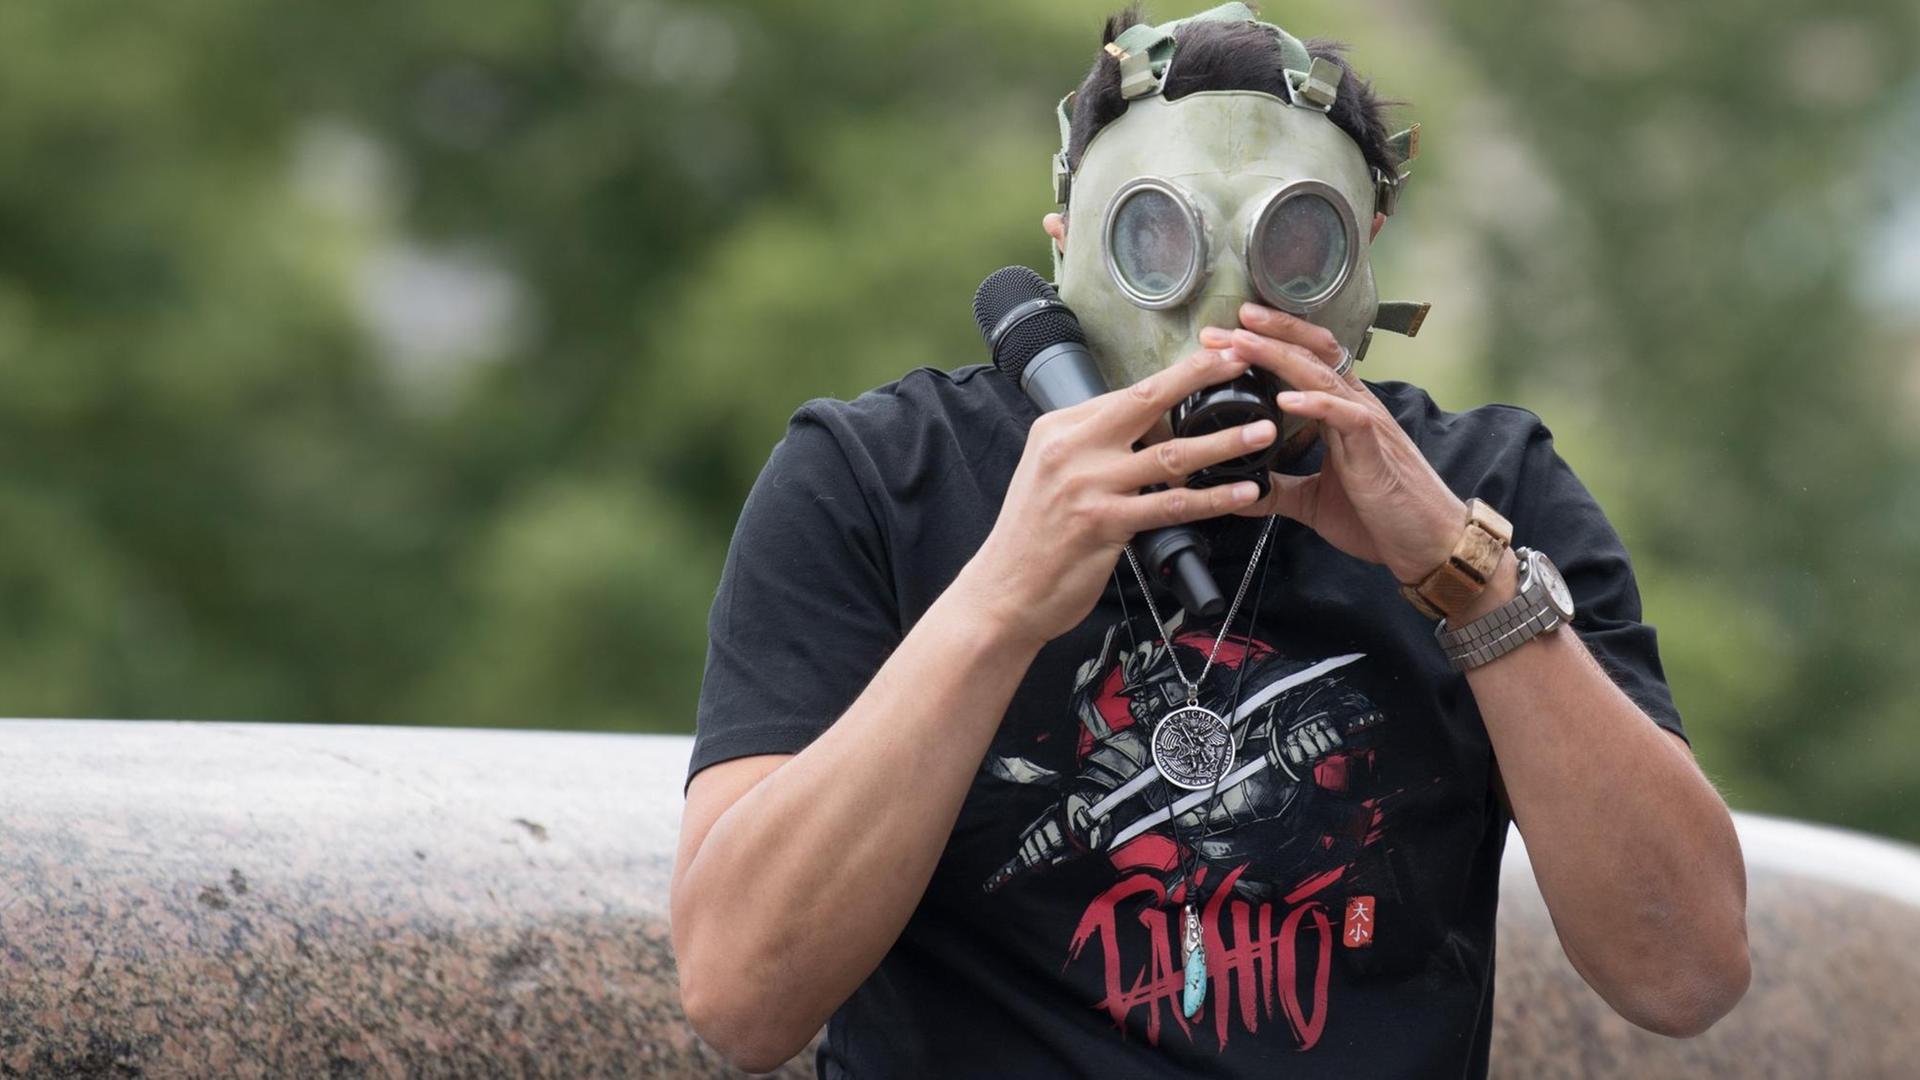 Attila Hildmann, Kochbuchautor und Anti-Corona-Aktivist, spricht bei einer Demonstration gegen die Corona-Einschränkungen im Lustgarten und setzt sich eine ABC-Schutzmaske auf.